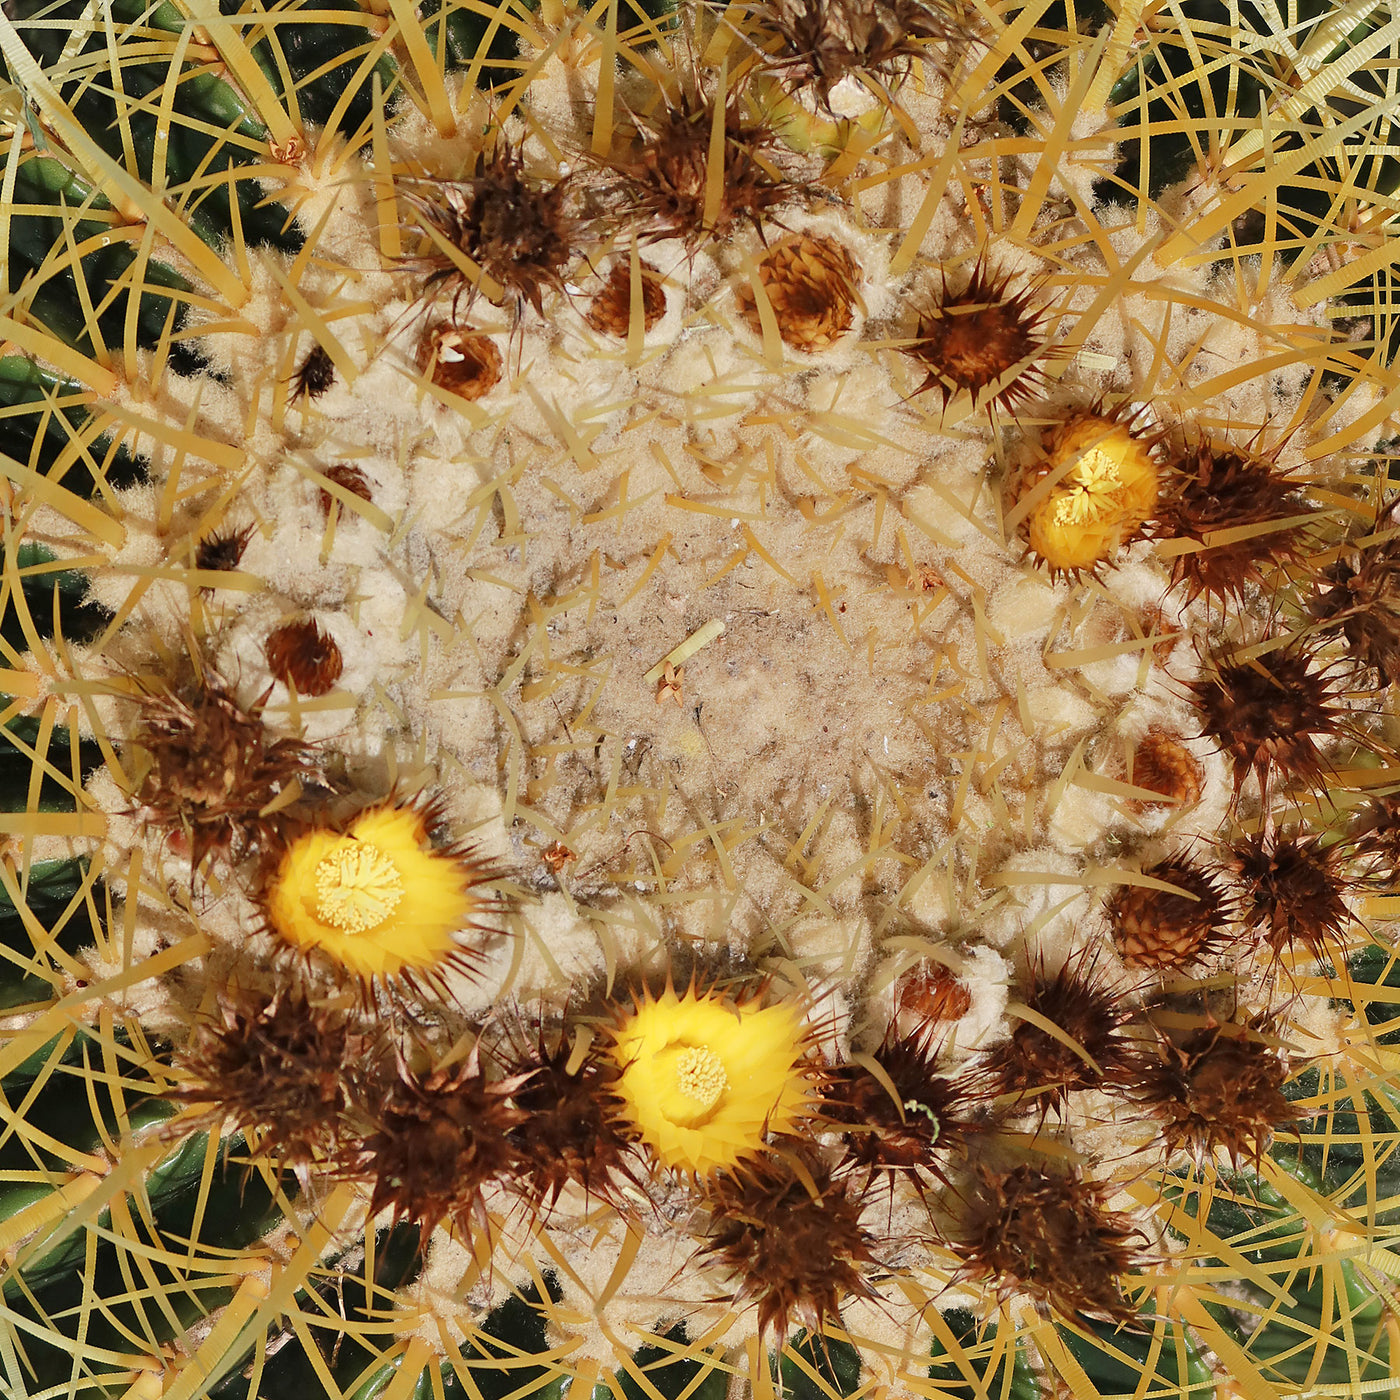 Golden Barrel Cactus - Echinocactus grusonii -12